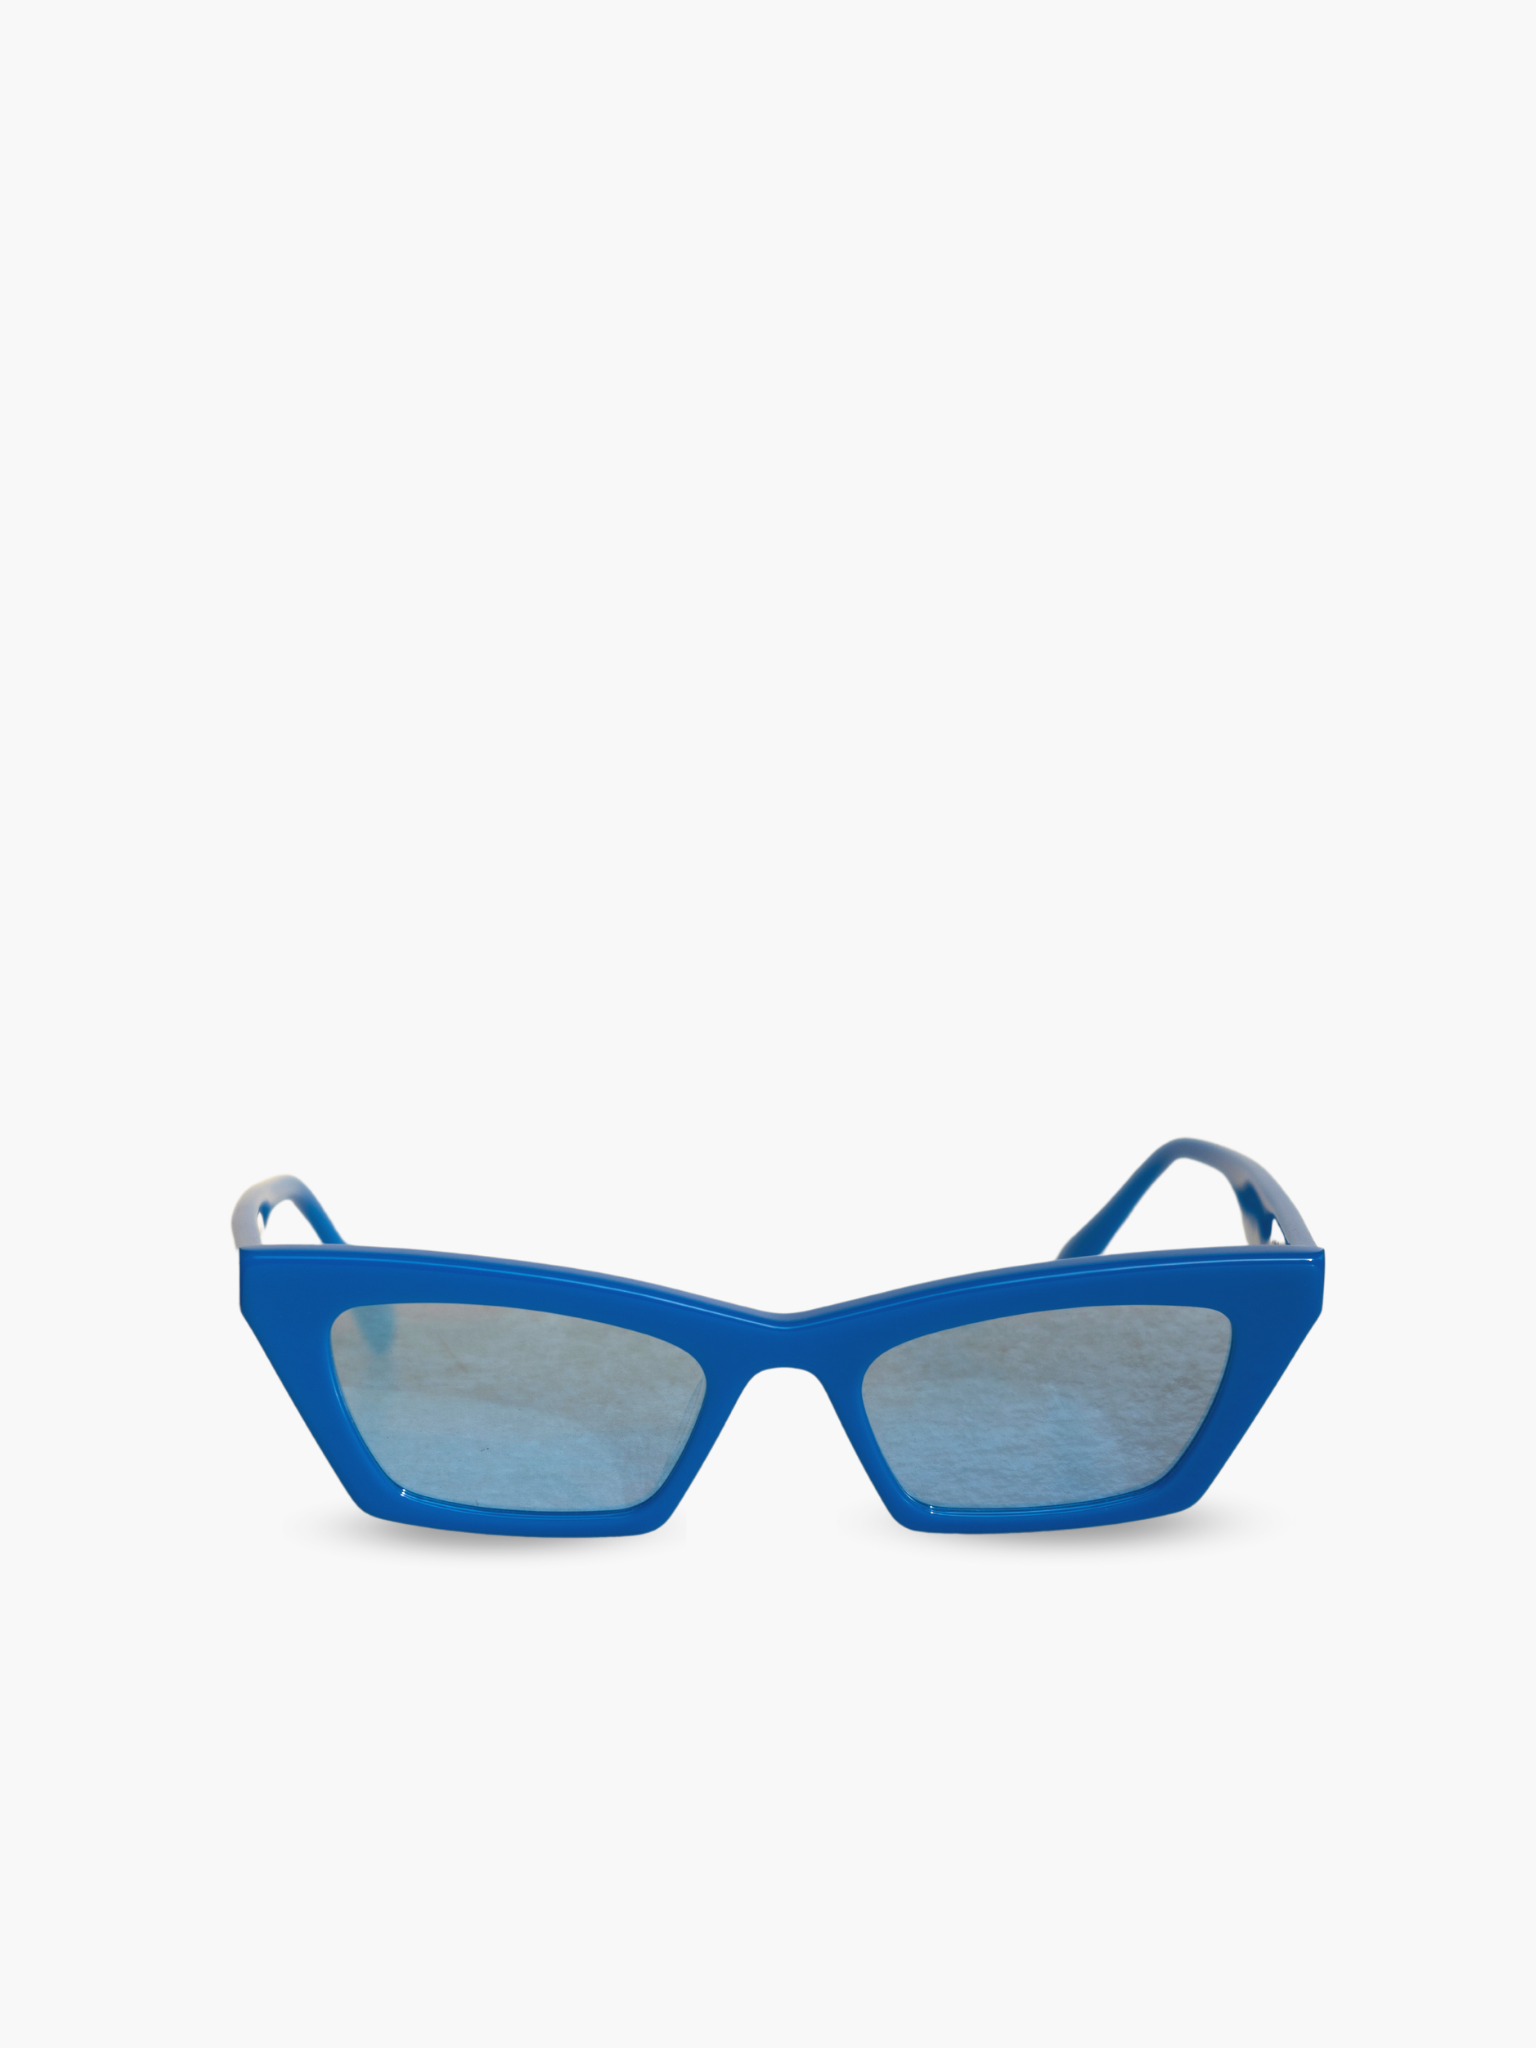 Occhiali da sole Modello Bold Neon Electric Blue: montatura color blue elettrico con lenti specchiate con riflesso celeste. Unisex e adatto alla maggior parte delle forme del viso. Le lenti sono antiriflesso e con protezione UV.